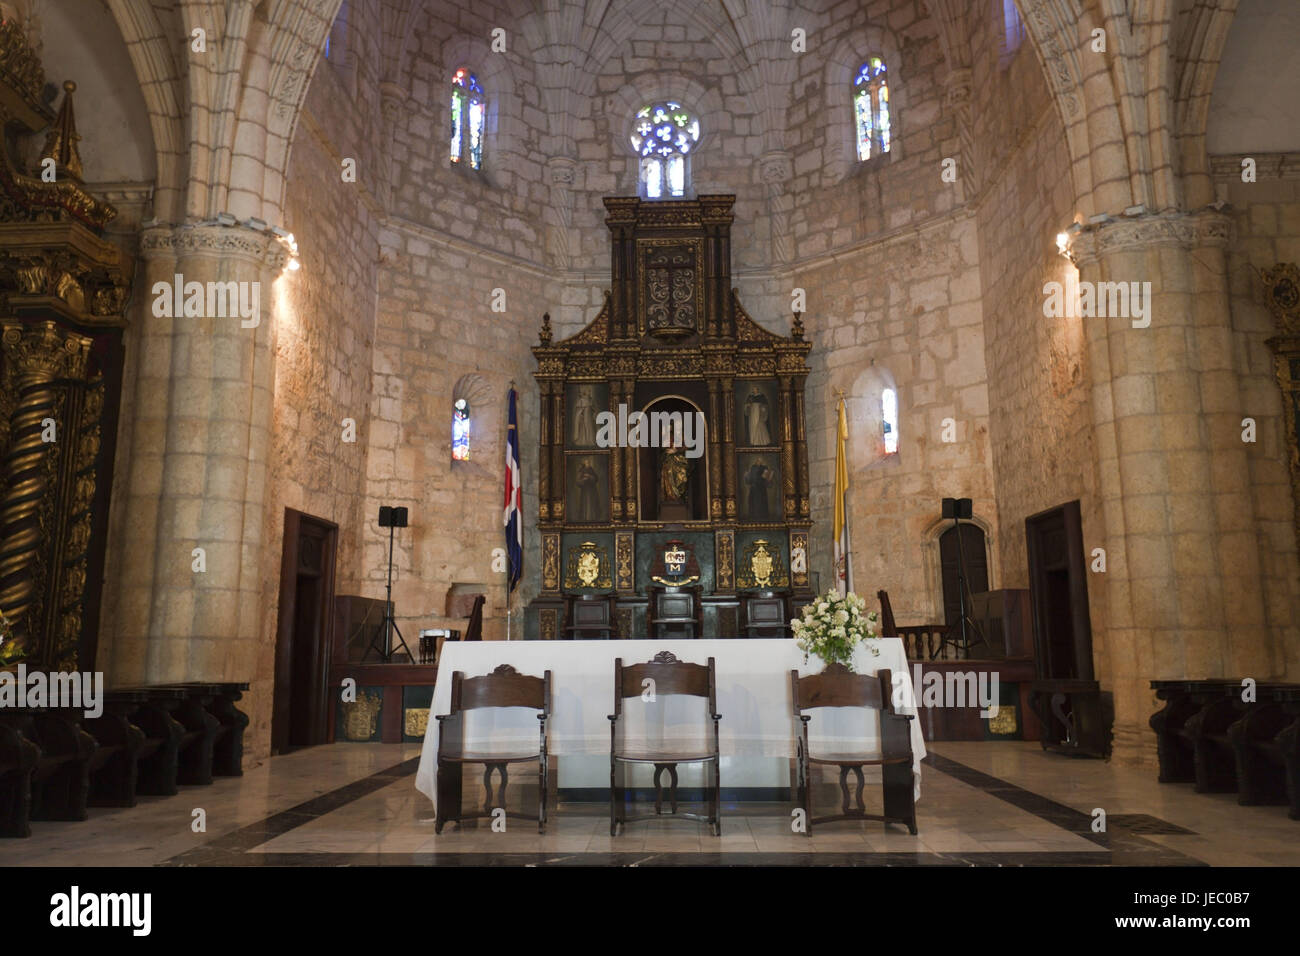 Interior view of the cathedral Santa Maria la Menor, Santo Domingo, the Dominican Republic, Stock Photo